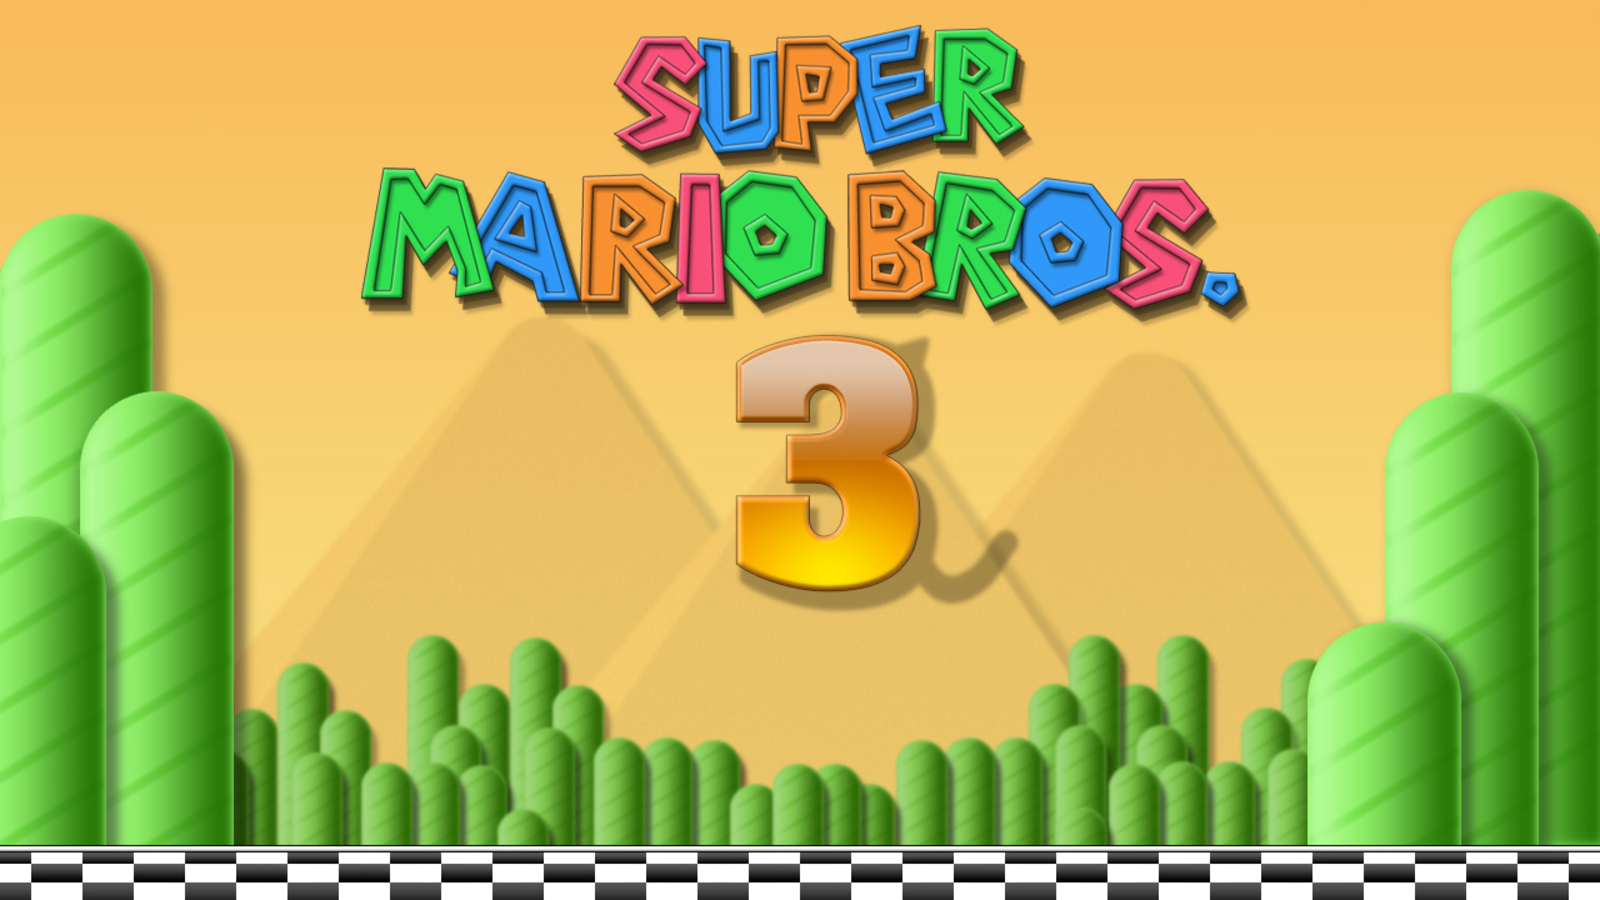 Игра супер братья. Марио 3. Super Mario Bros 3. Супер братья Марио игра. Супер Марио БРОС 3 картинки.